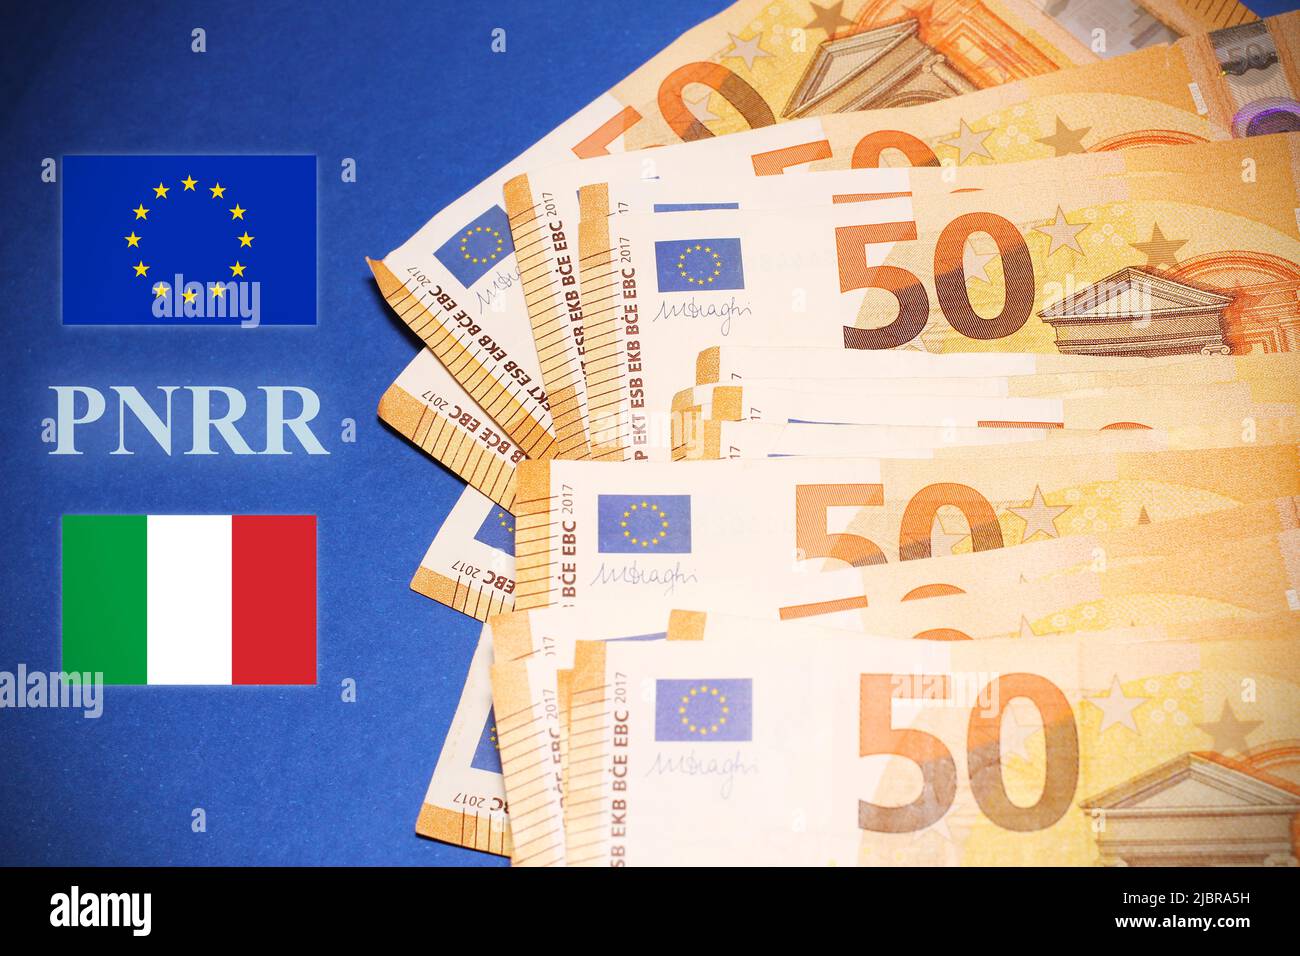 50 billets en euros sur une table bleue, avec les drapeaux italien et européen, texte PNRR. Banque D'Images